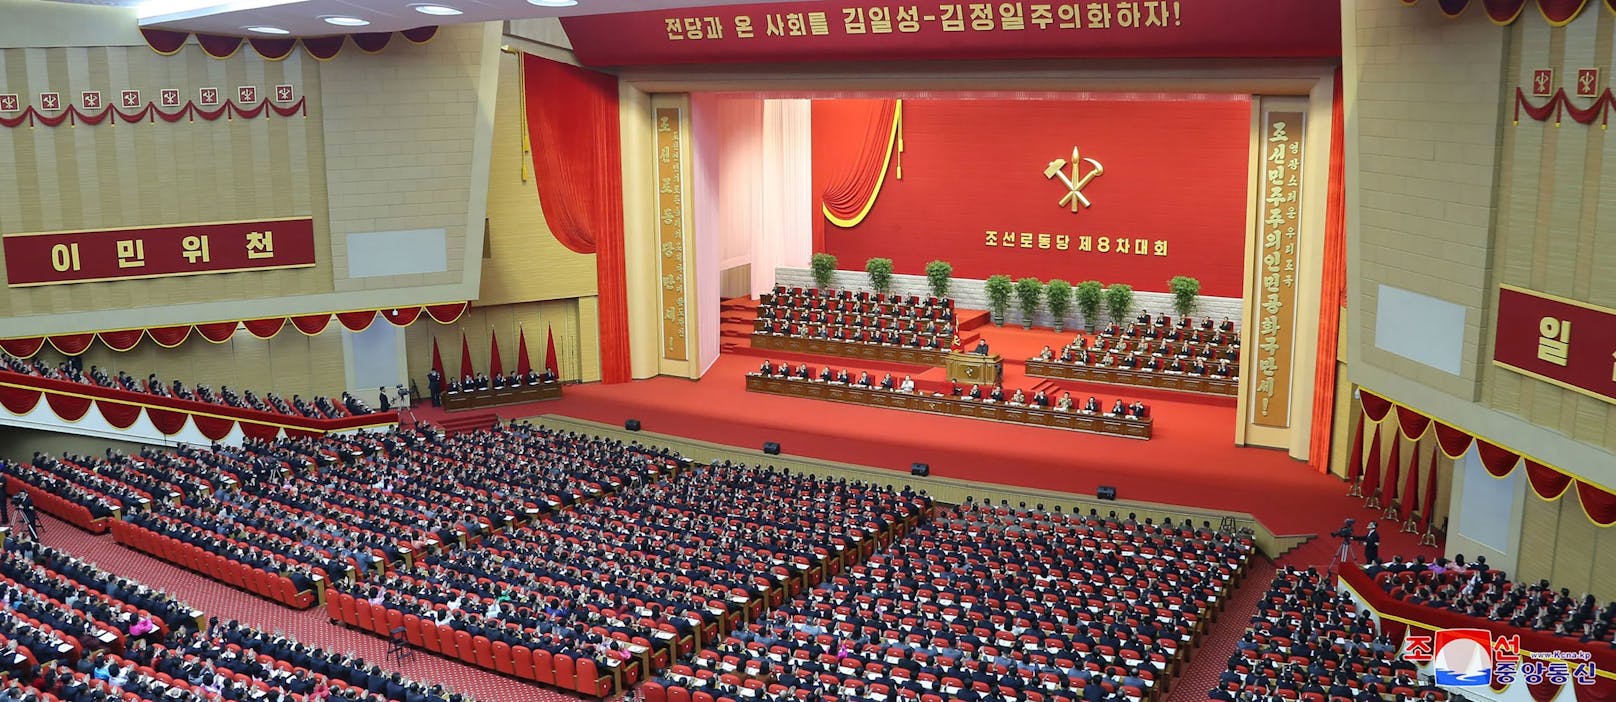 Überläufer enthüllt neue Details zu Nordkoreas Regime